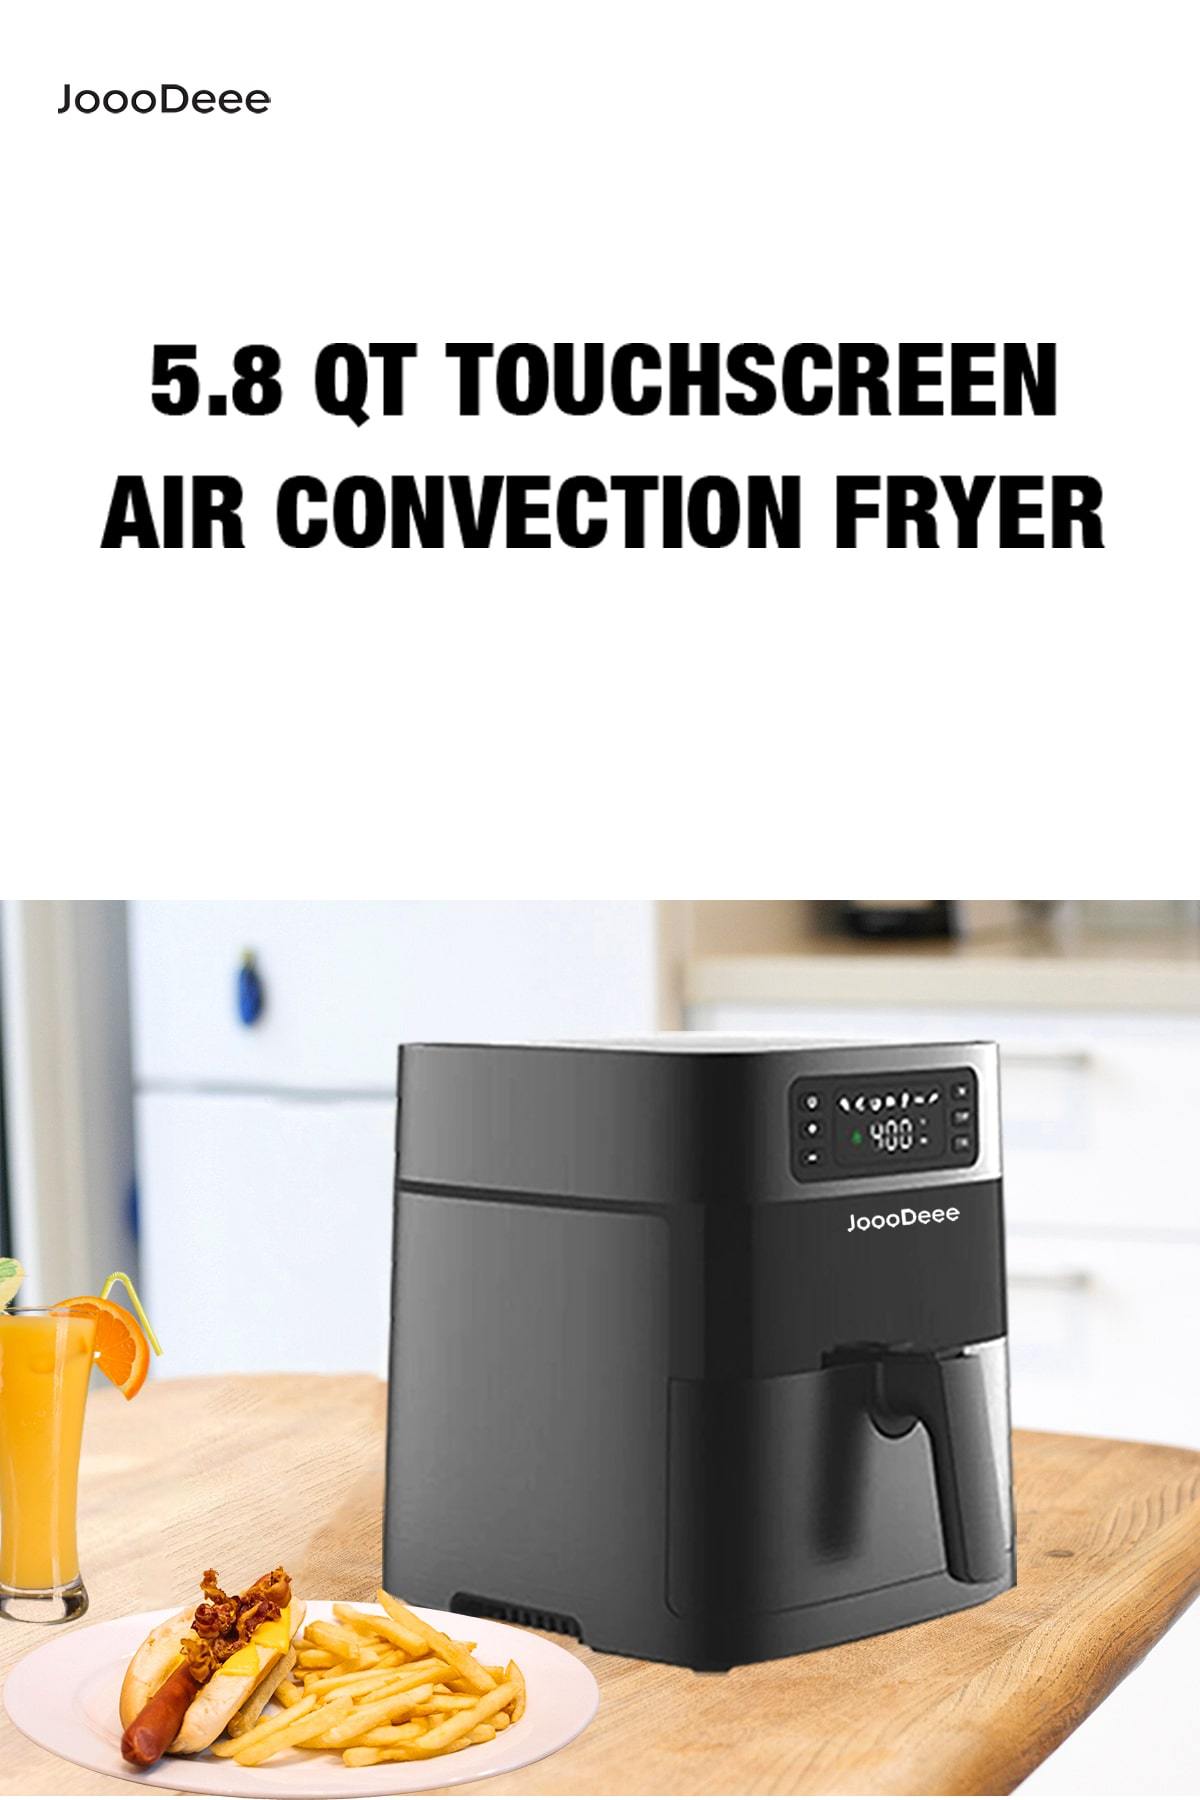 JoooDeee 5.8 QT Electric Air Fryer Hot Oven Oilless Cooker